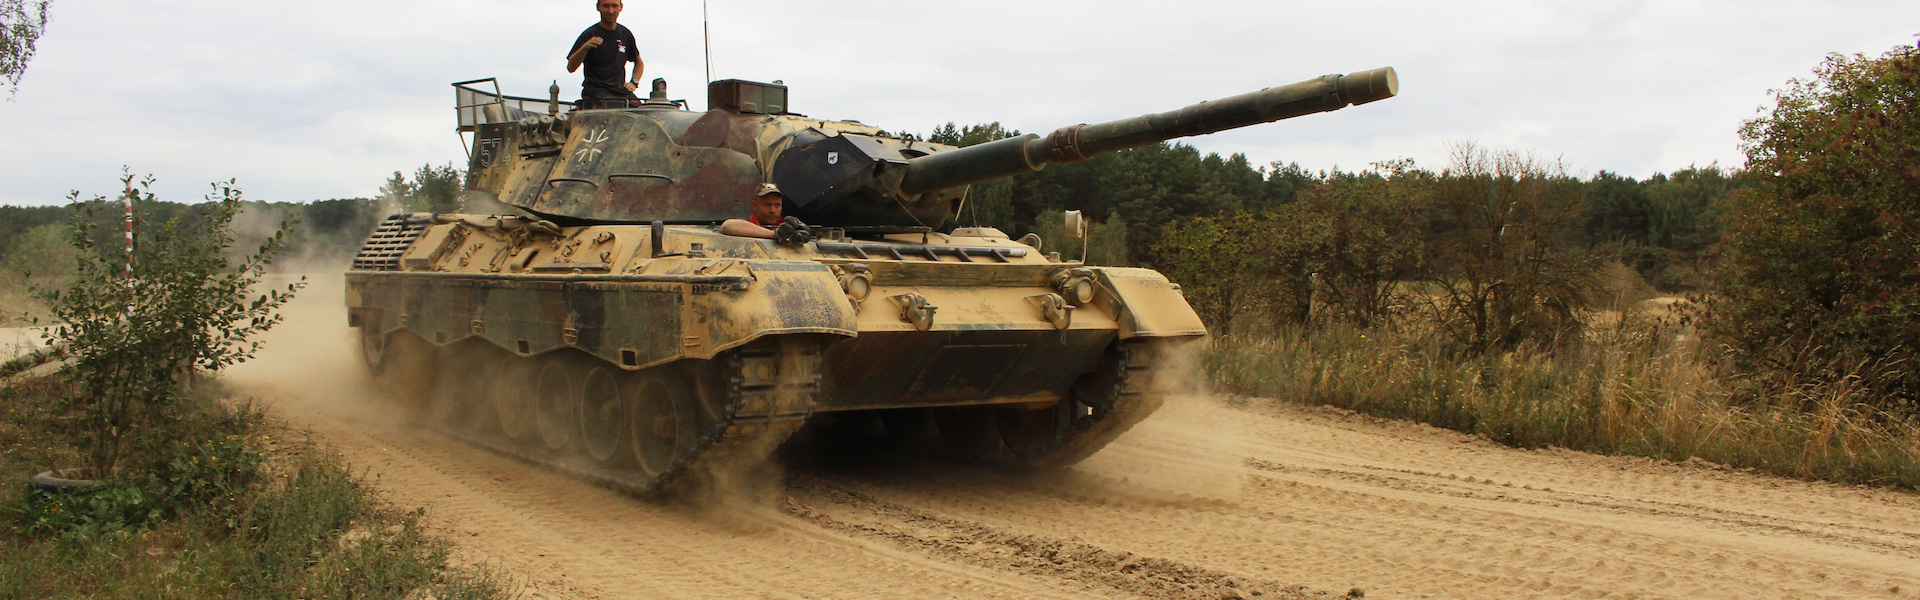 Bundeswehrpanzer Leopard 1